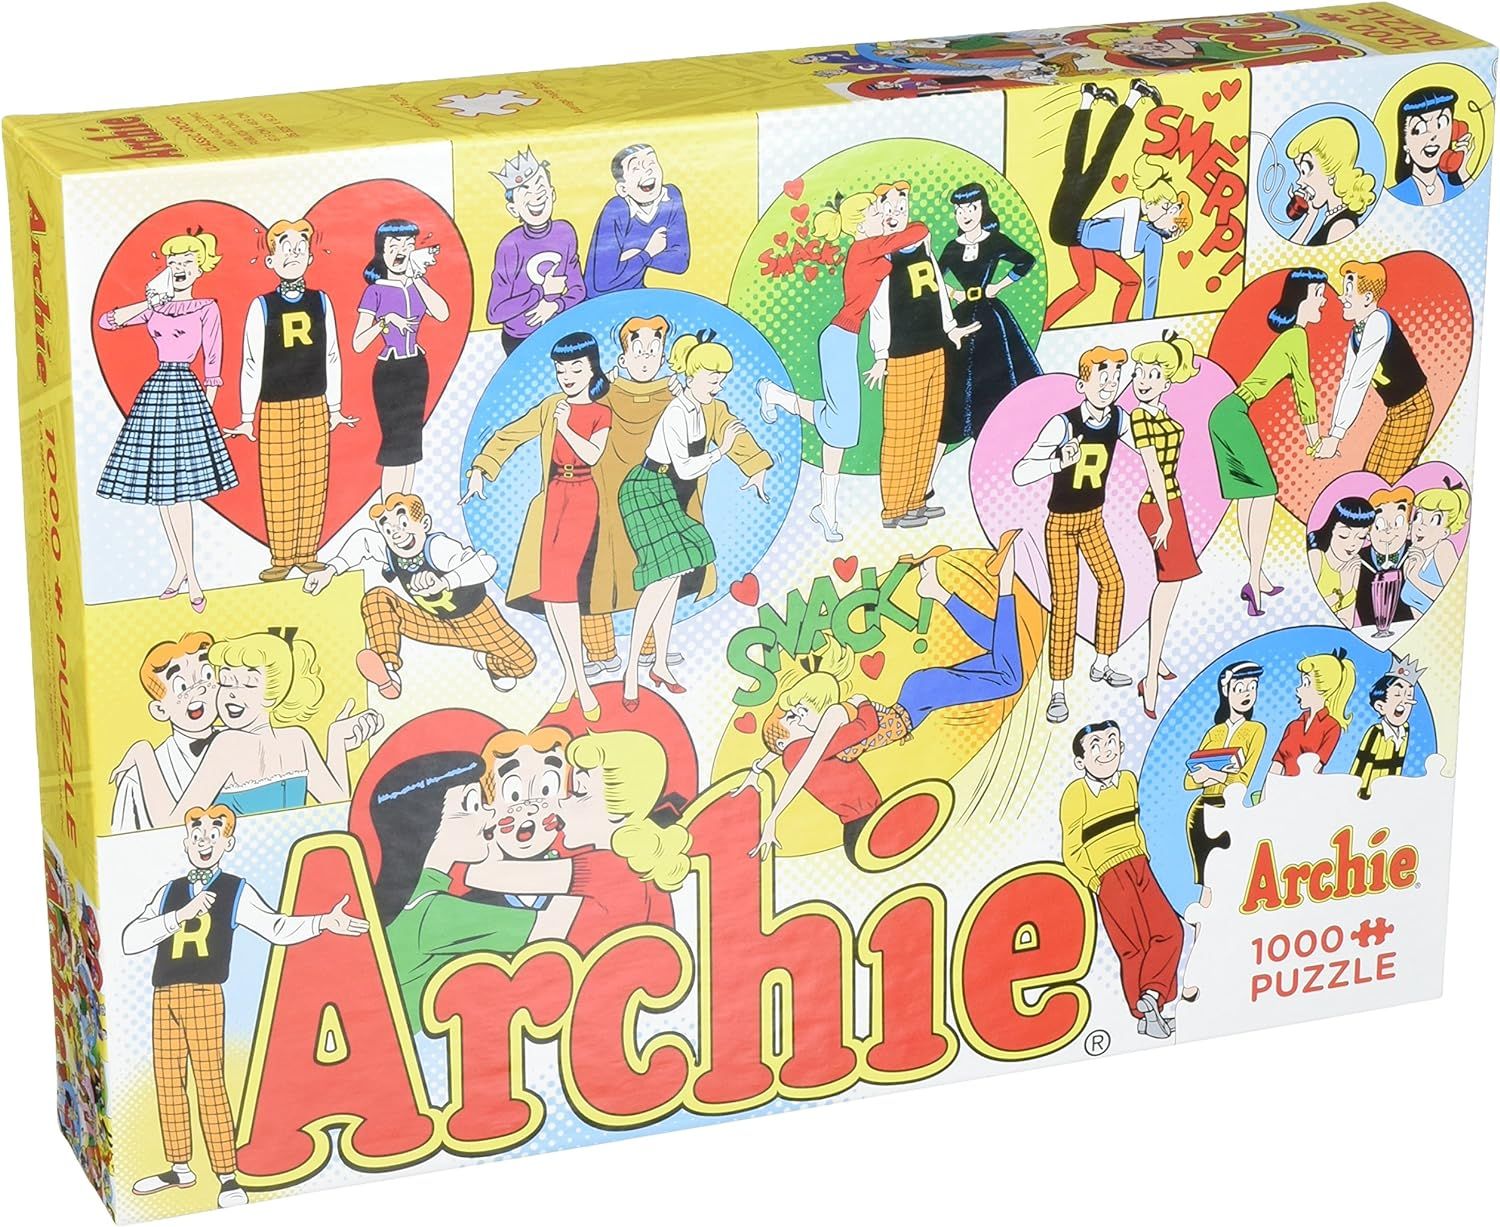 archie comics puzzle cover